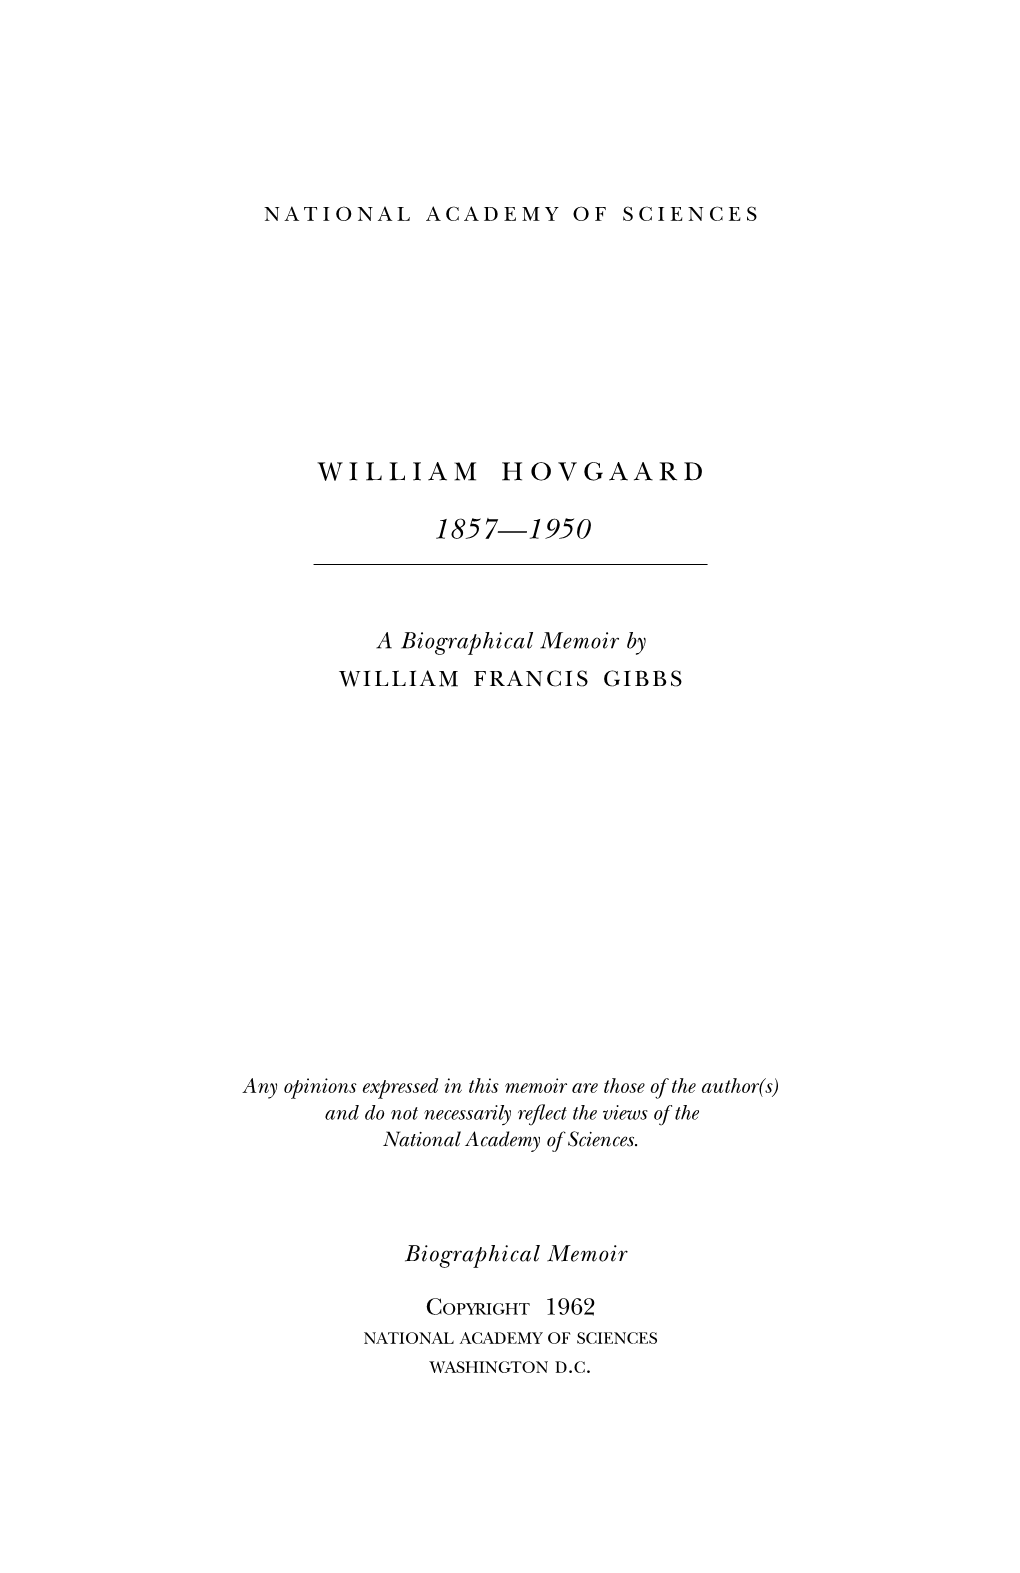 William Hovgaard